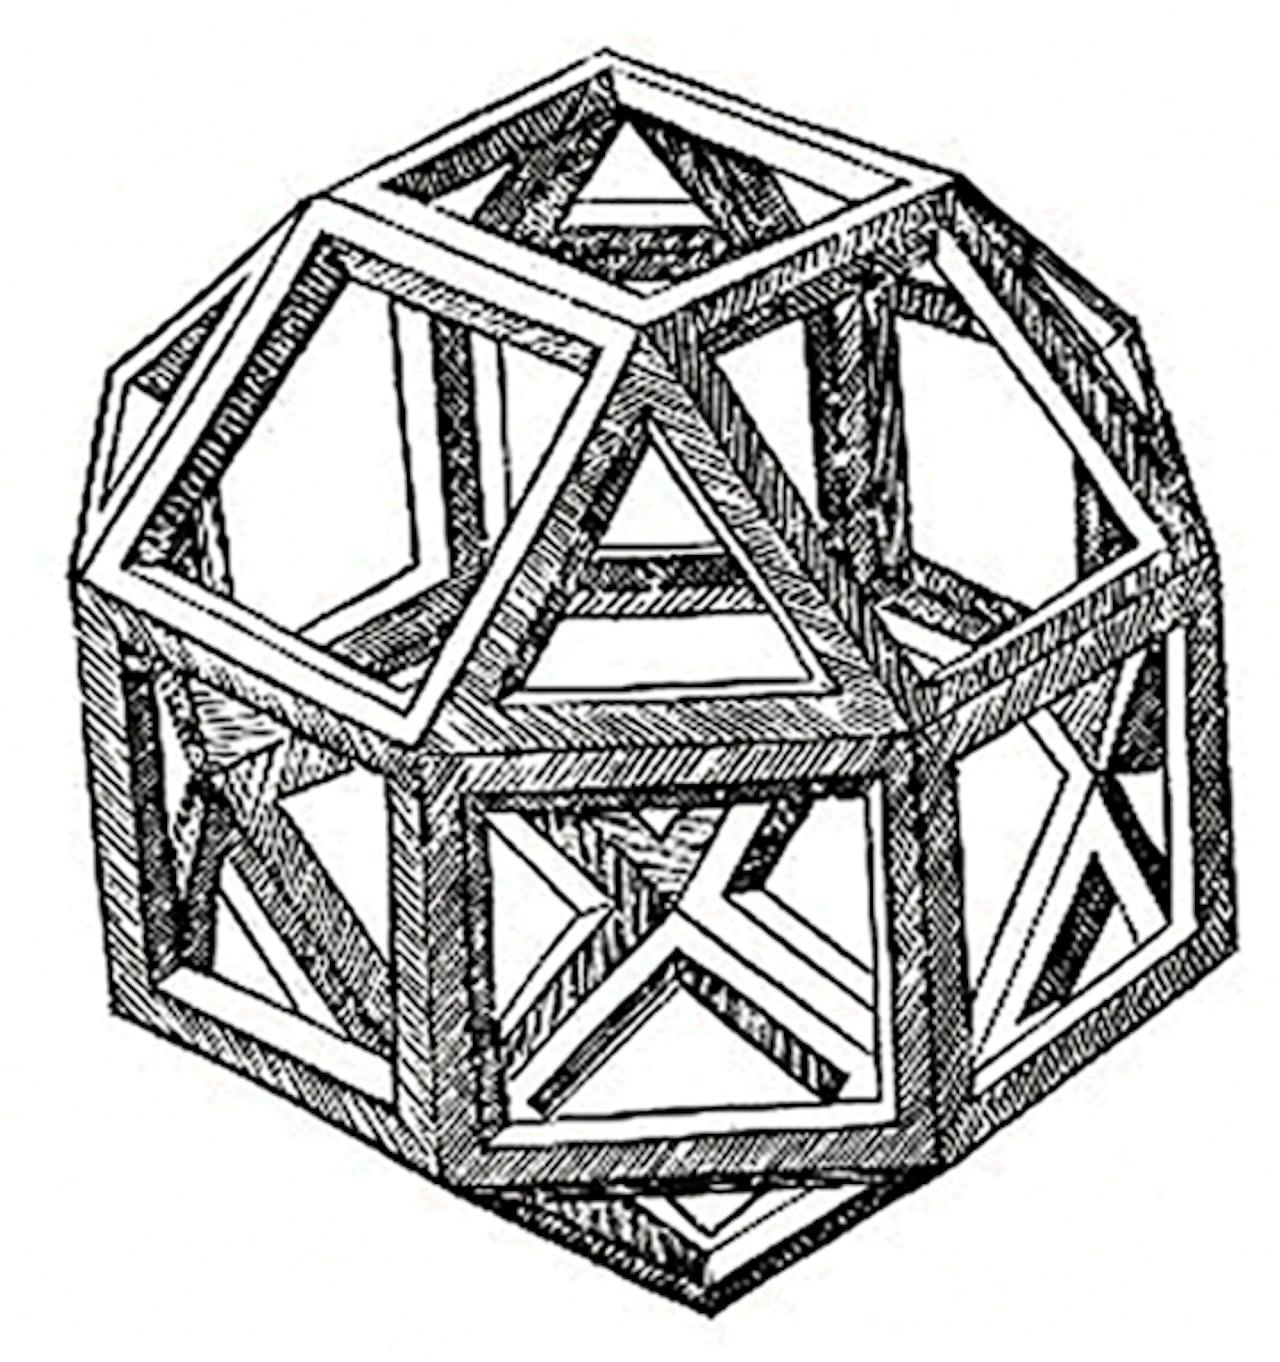 Een zwart-wit tekening van Leonardo da Vinci's Polyhedra.